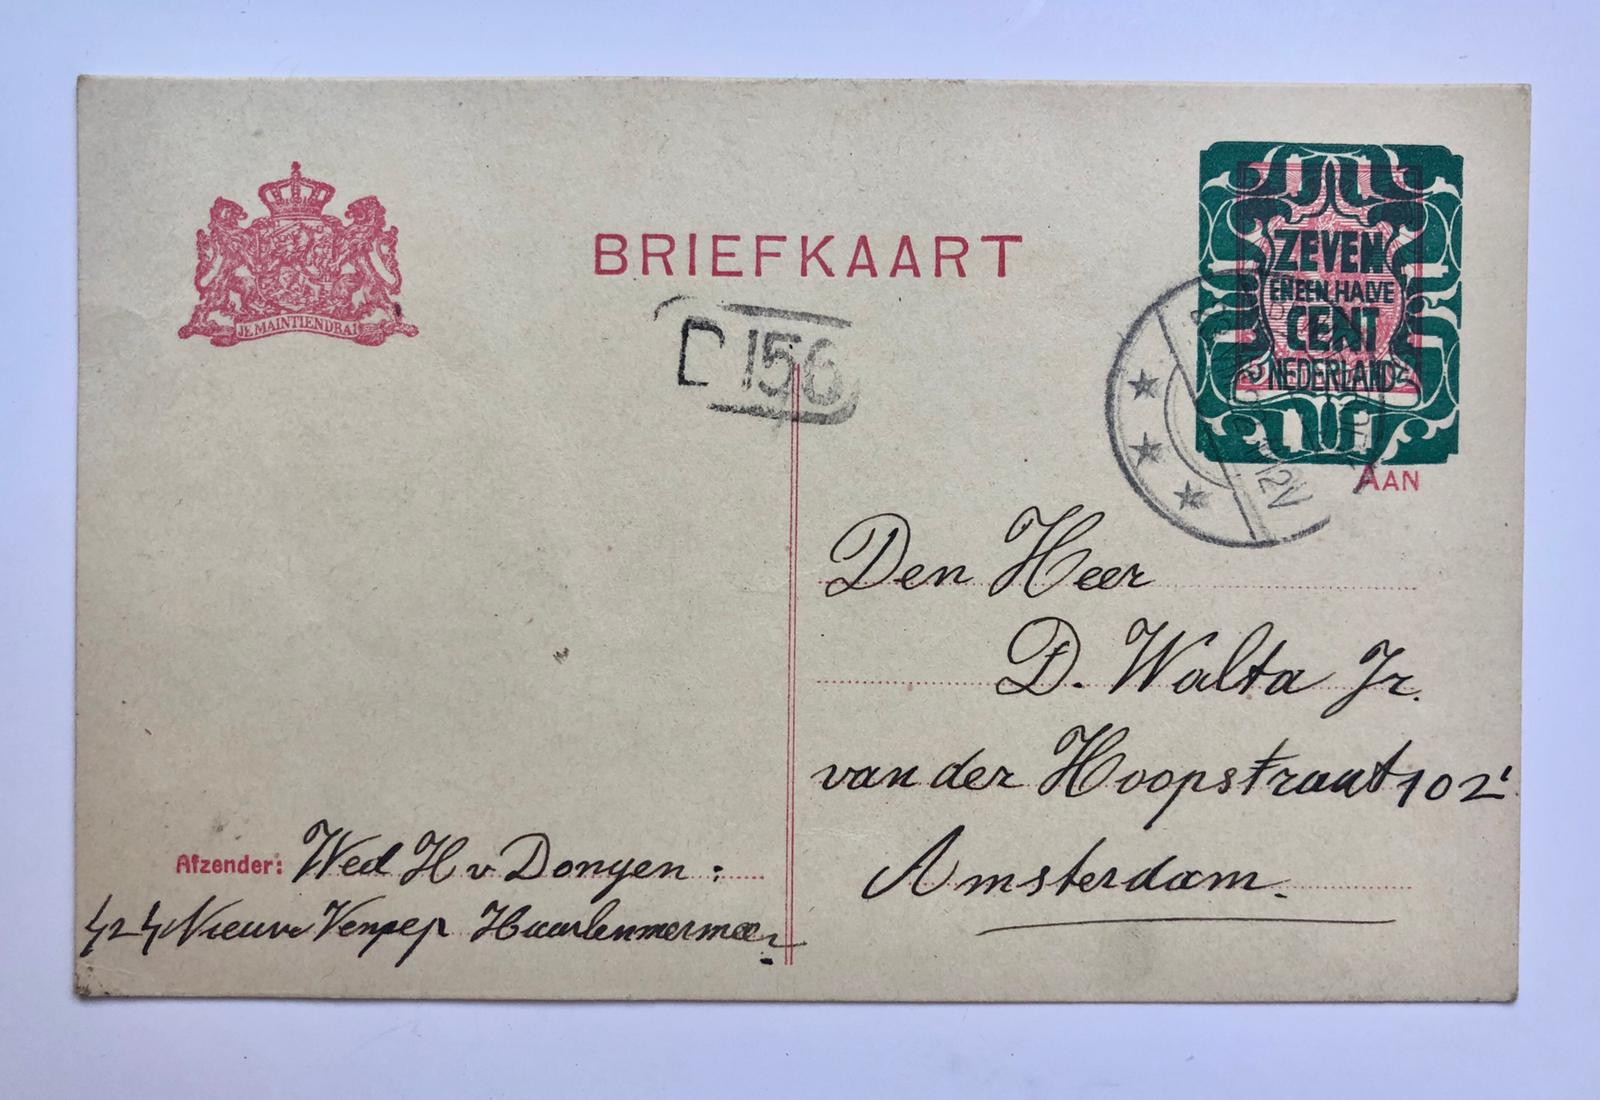  - [POSTCARD, DONGEN, VAN, WALTA] Briefkaart van wed. H. van Dongen te Nieuw Vennep aan fam. D. Walta, 1922.